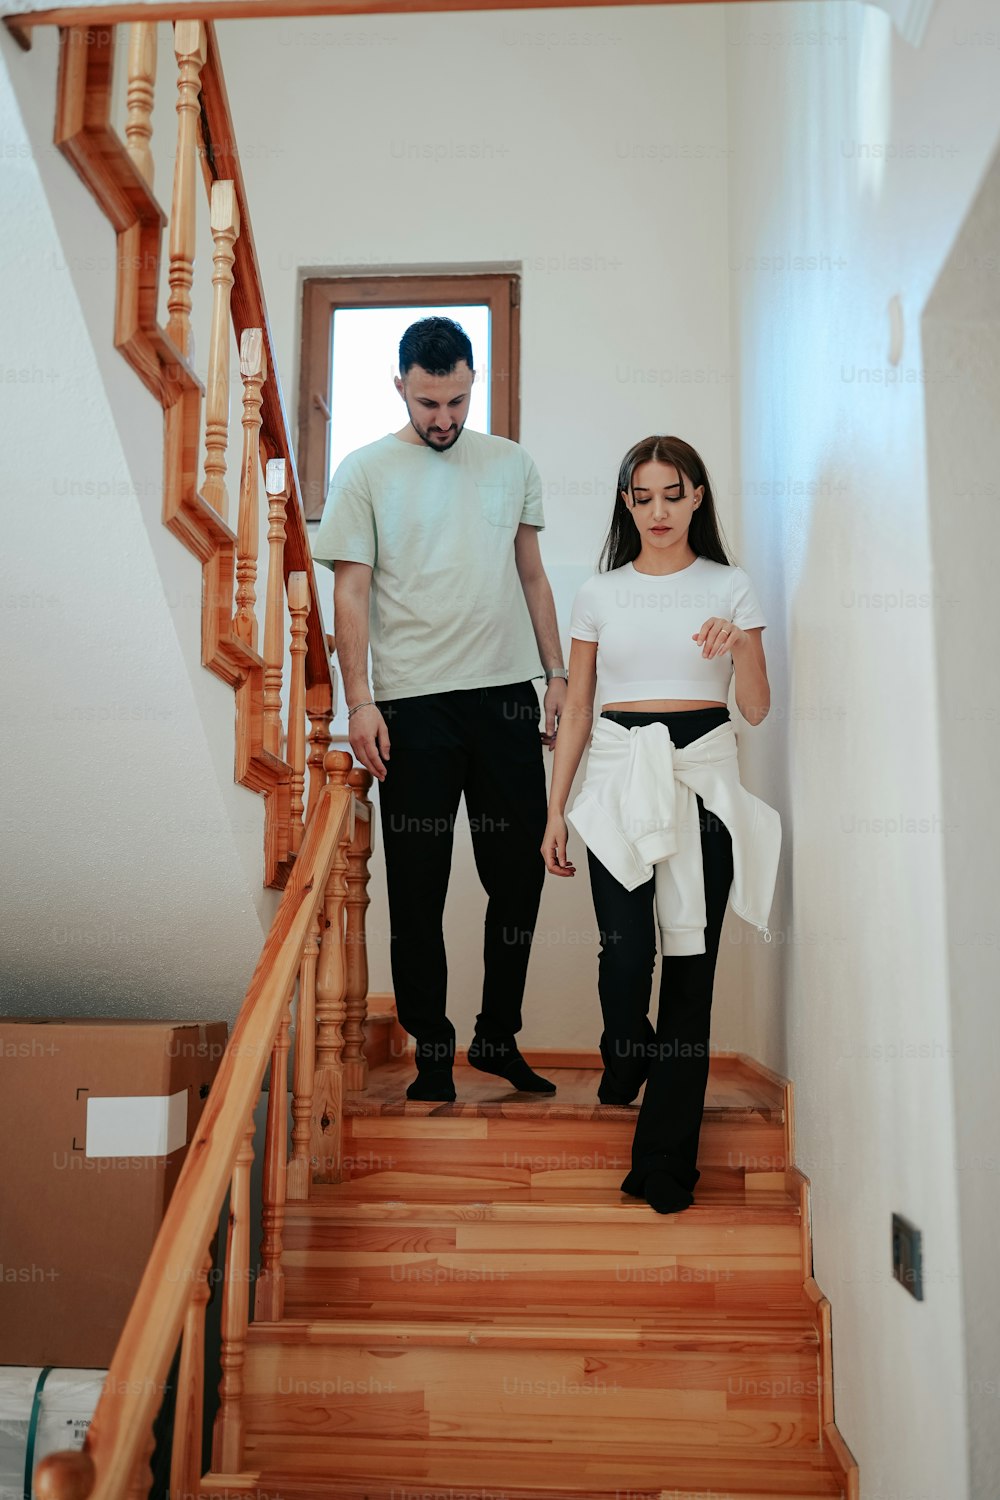 Un homme et une femme descendant un escalier